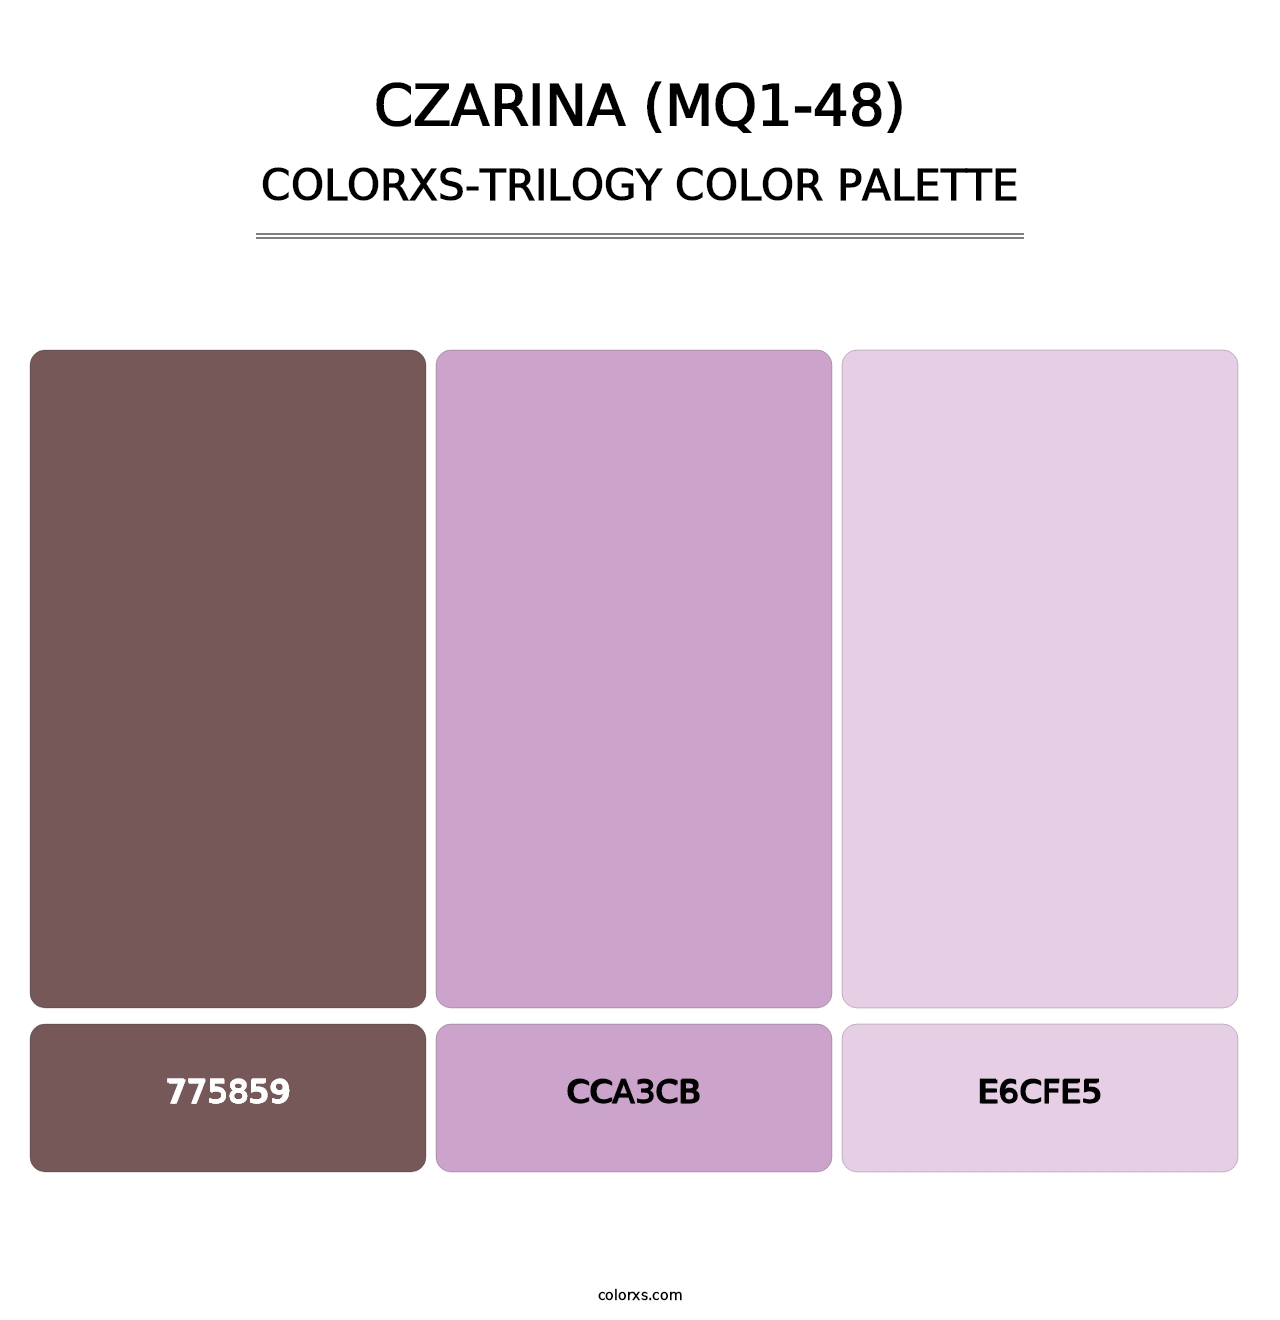 Czarina (MQ1-48) - Colorxs Trilogy Palette